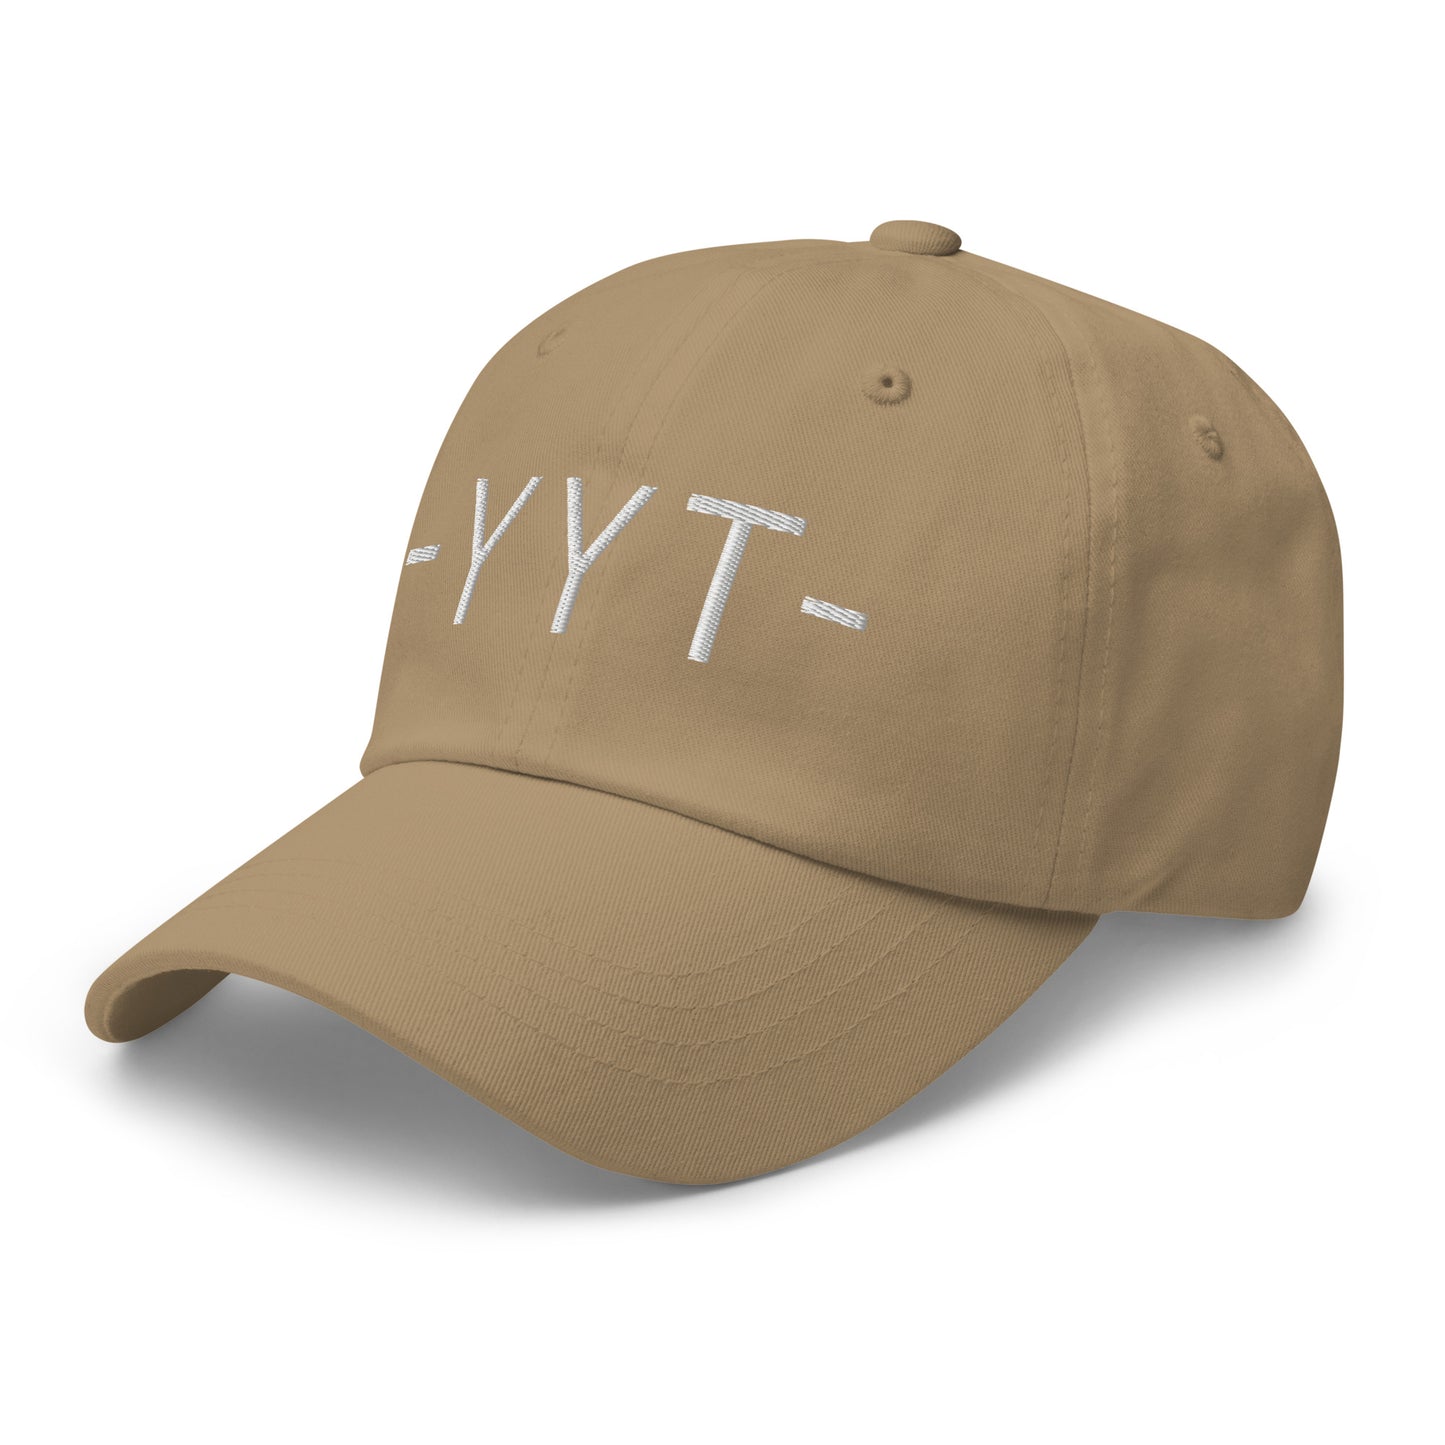 Souvenir Baseball Cap - White • YYT St. John's • YHM Designs - Image 22